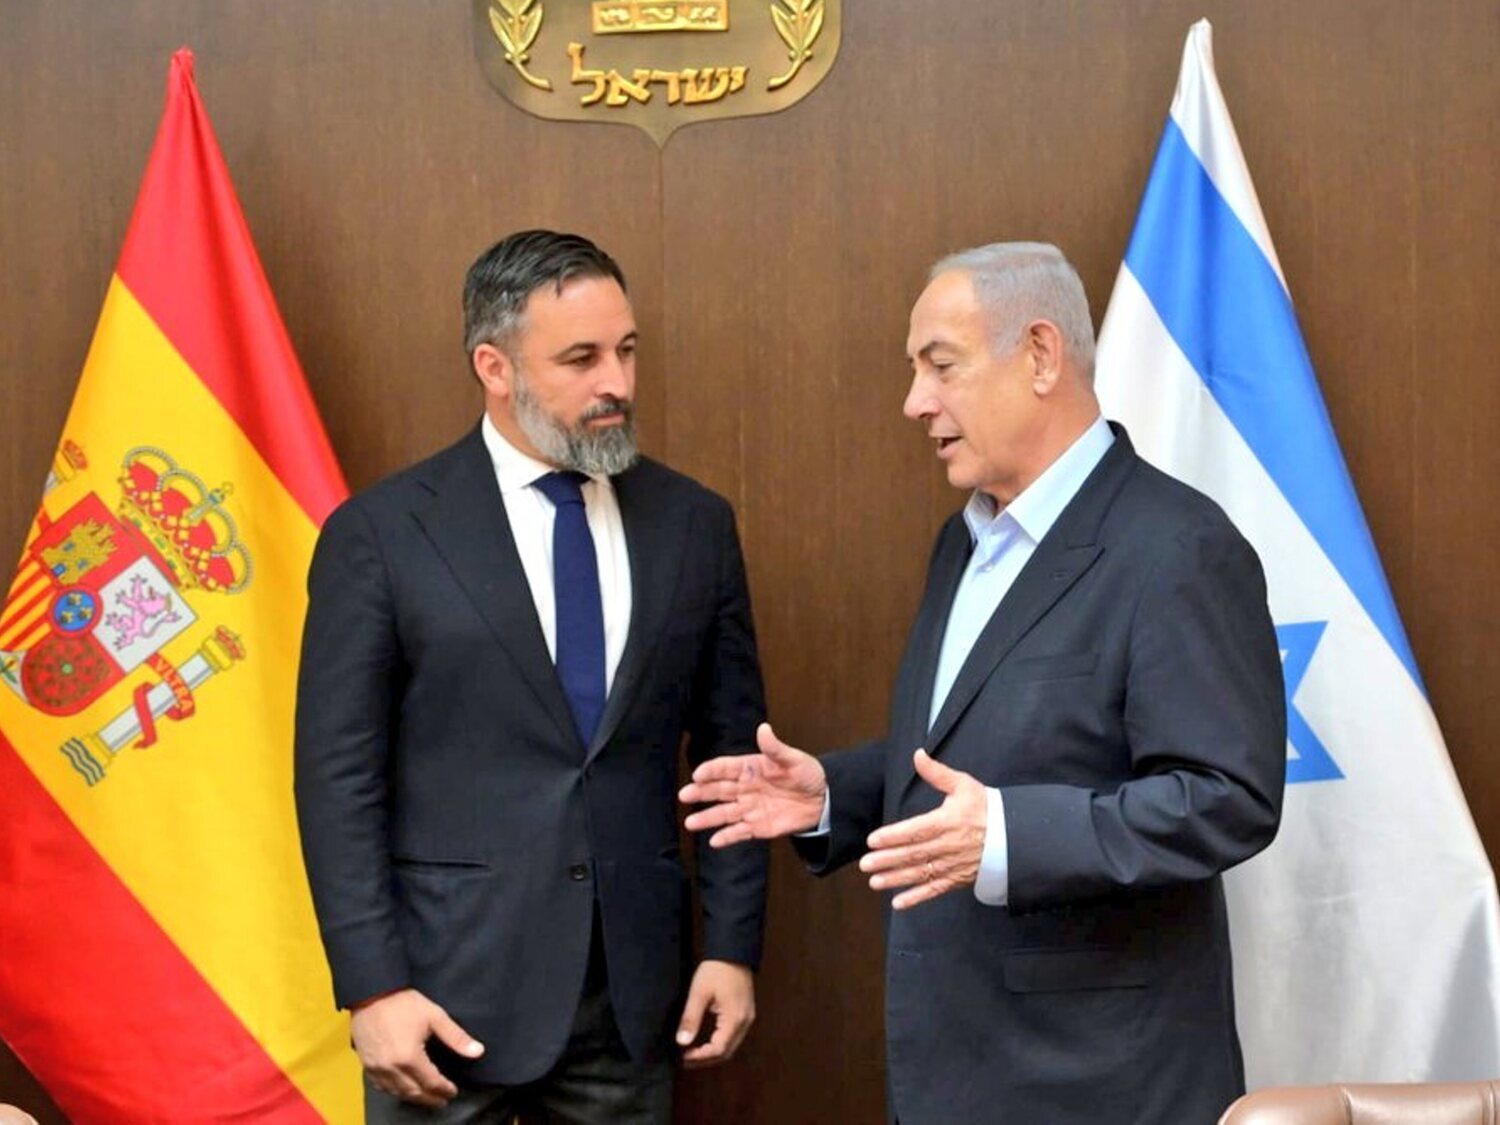 Las reacciones tras la reunión de Abascal con Netanyahu: "La foto le perseguirá toda la vida"